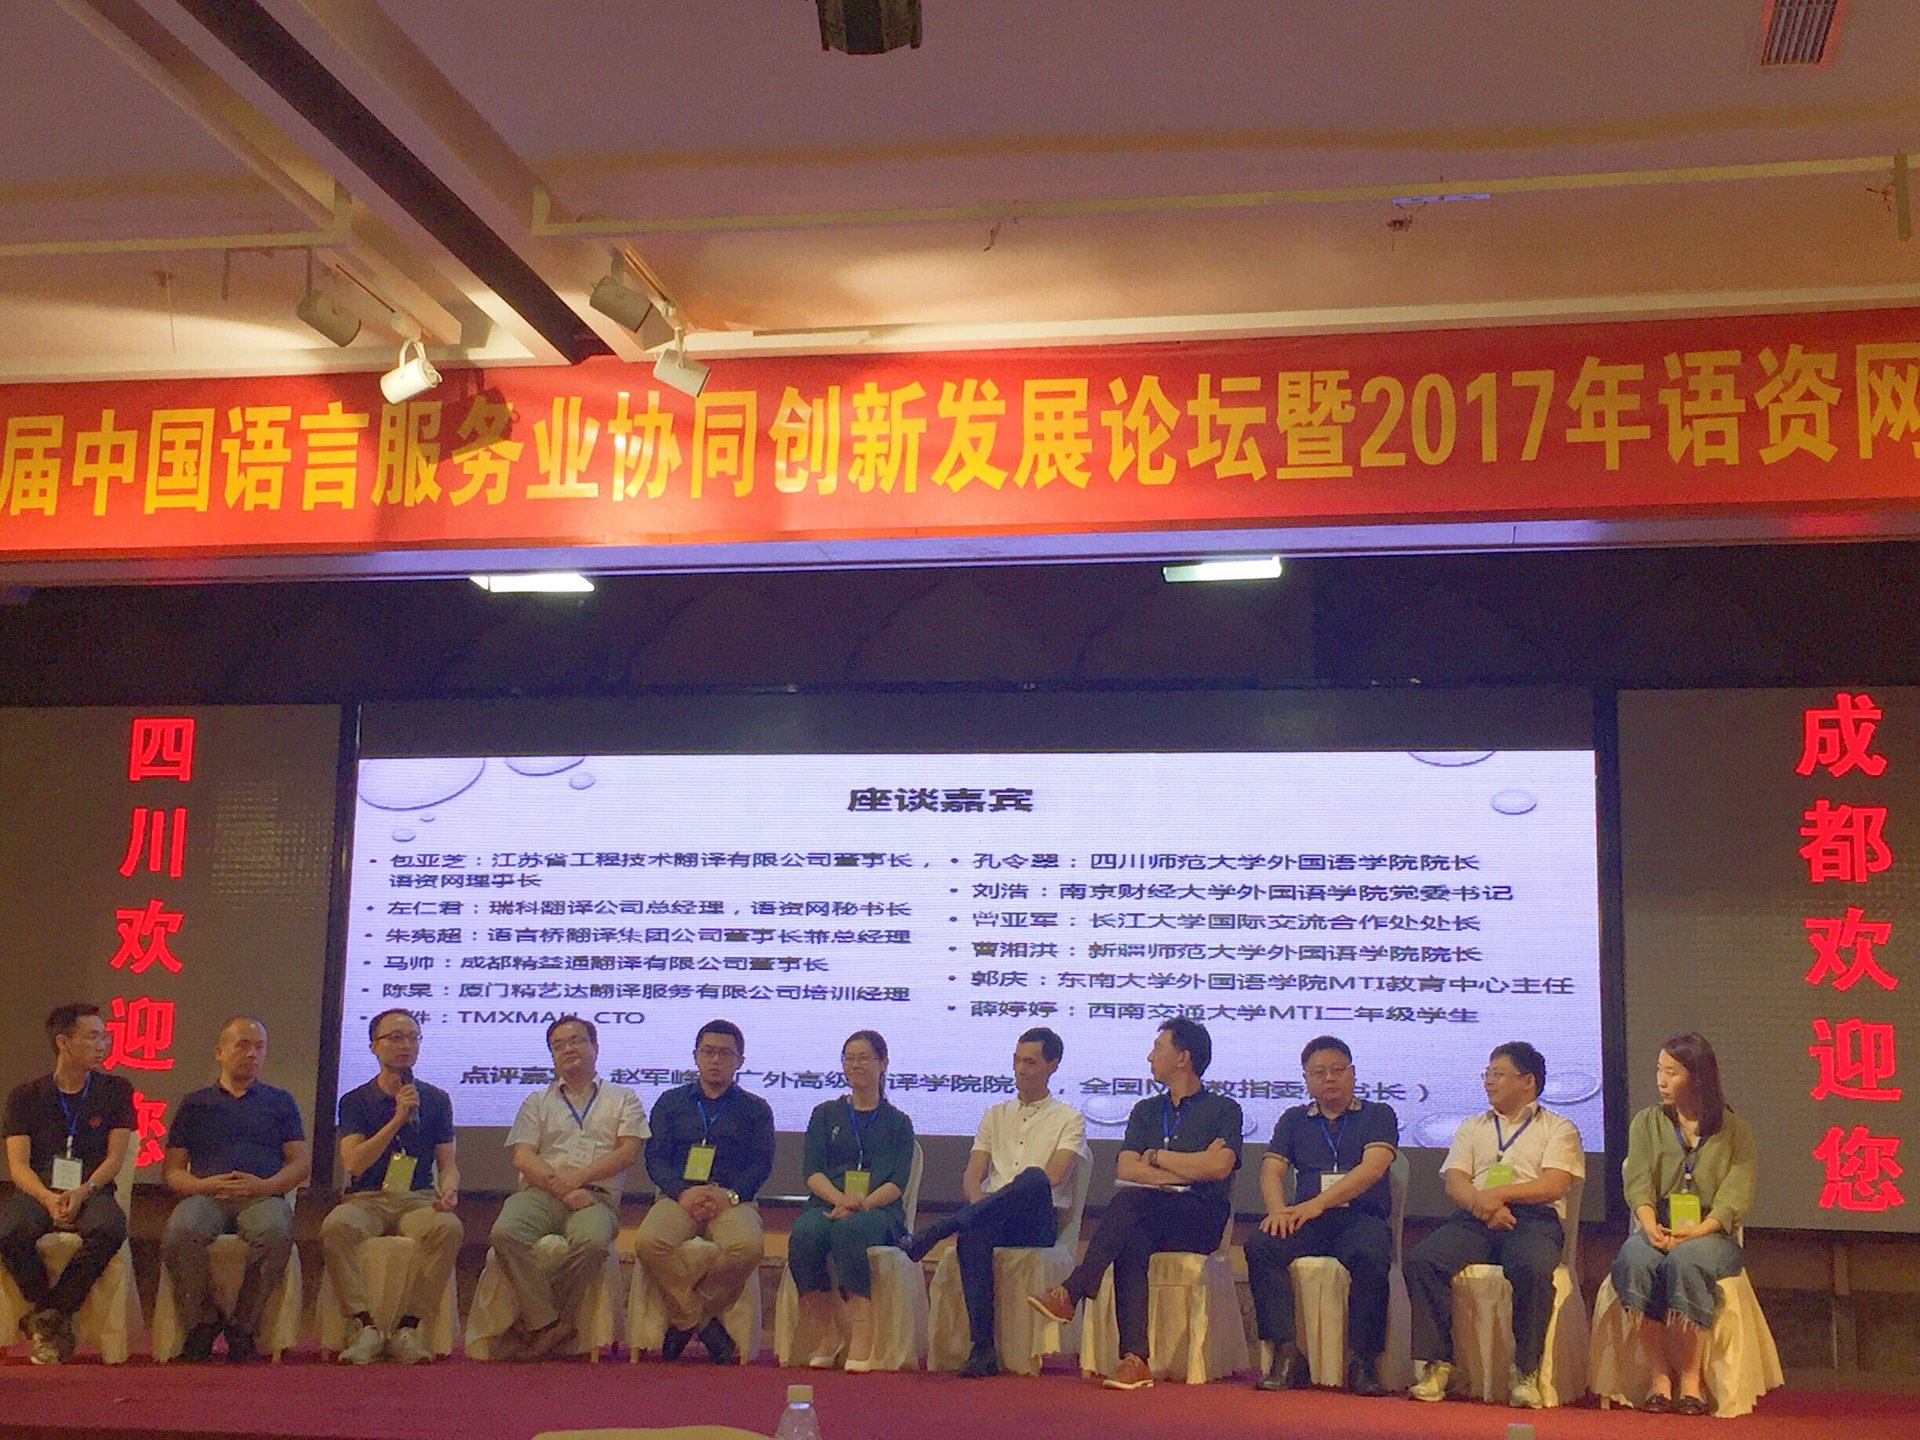 精艺达陈杲在第二届中国语言服务发展论坛上关于校企合作的发言